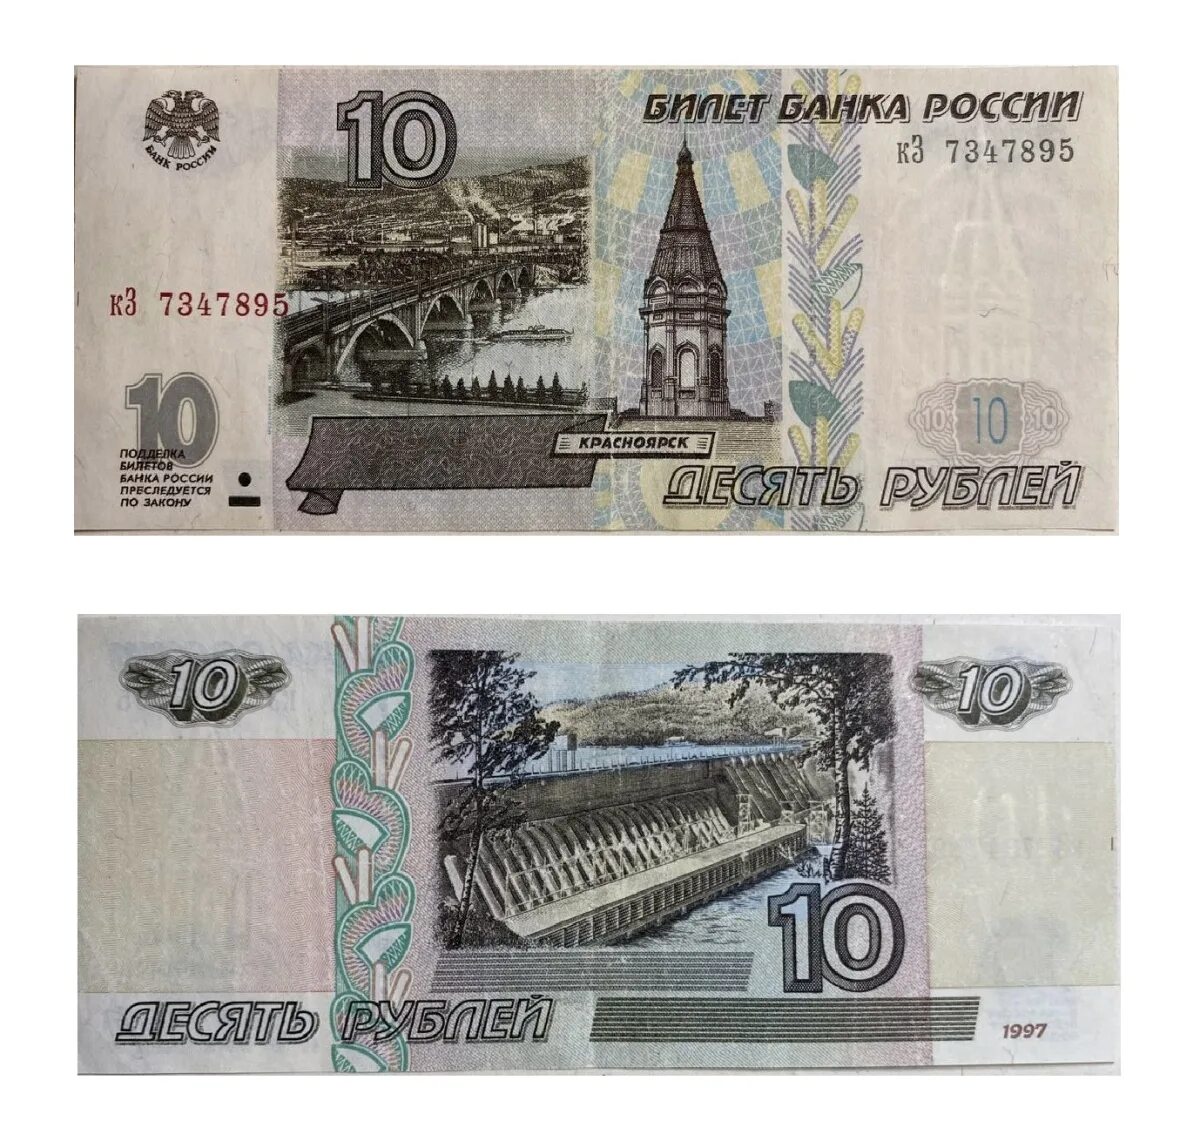 Е 10 рф. 10000 Рублей модификация 1995 года. Купюра 10 рублей 1997. Банкнота 10000 рублей 1995 года. Купюра 10000 рублей 1995 года.